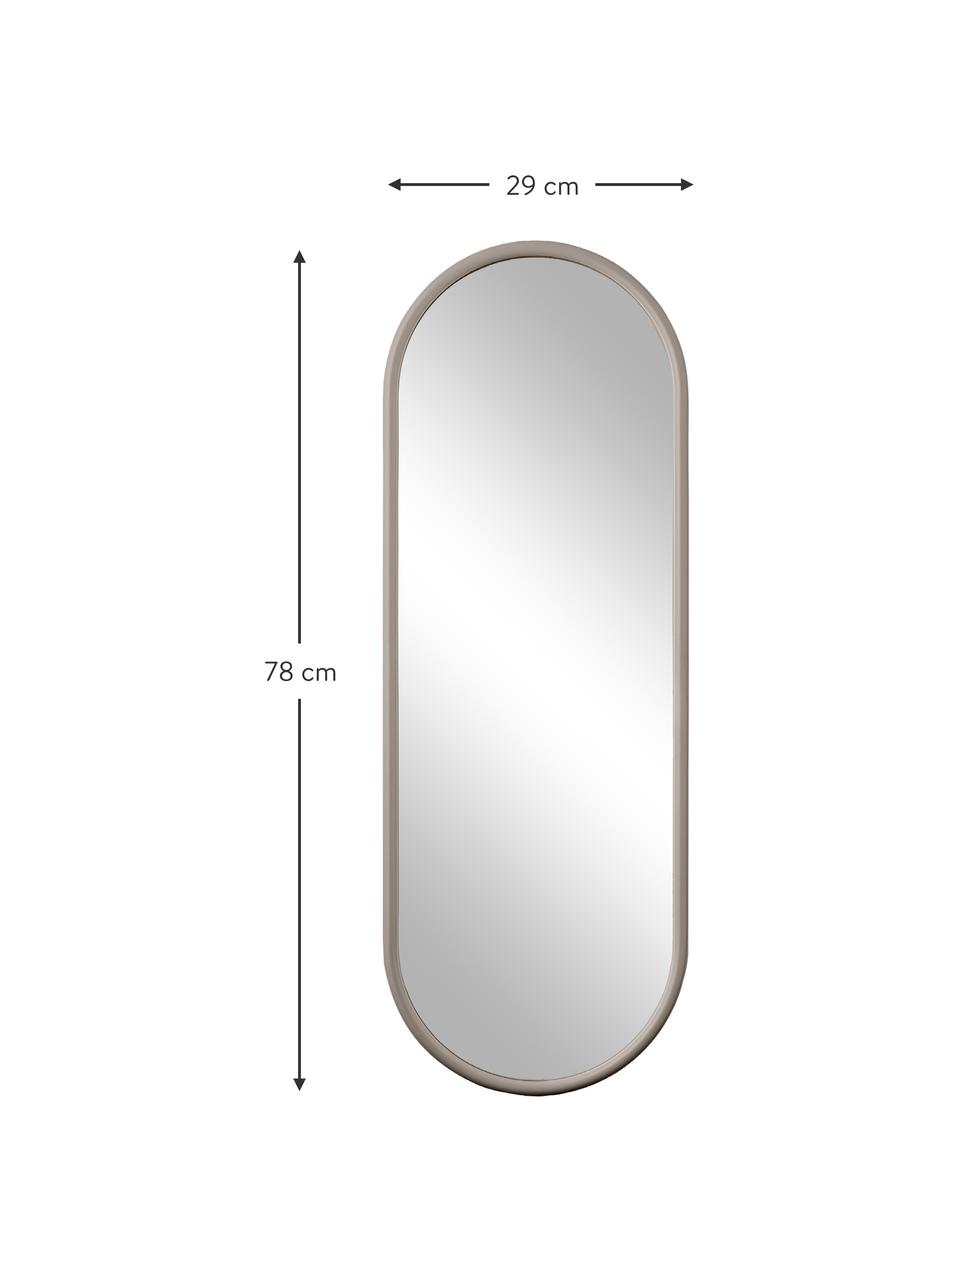 Ovaler Wandspiegel Angui, Spiegelfläche: Spiegelglas, Rahmen: Stahl, beschichtet, Hellbeige, B 29 x H 78 cm